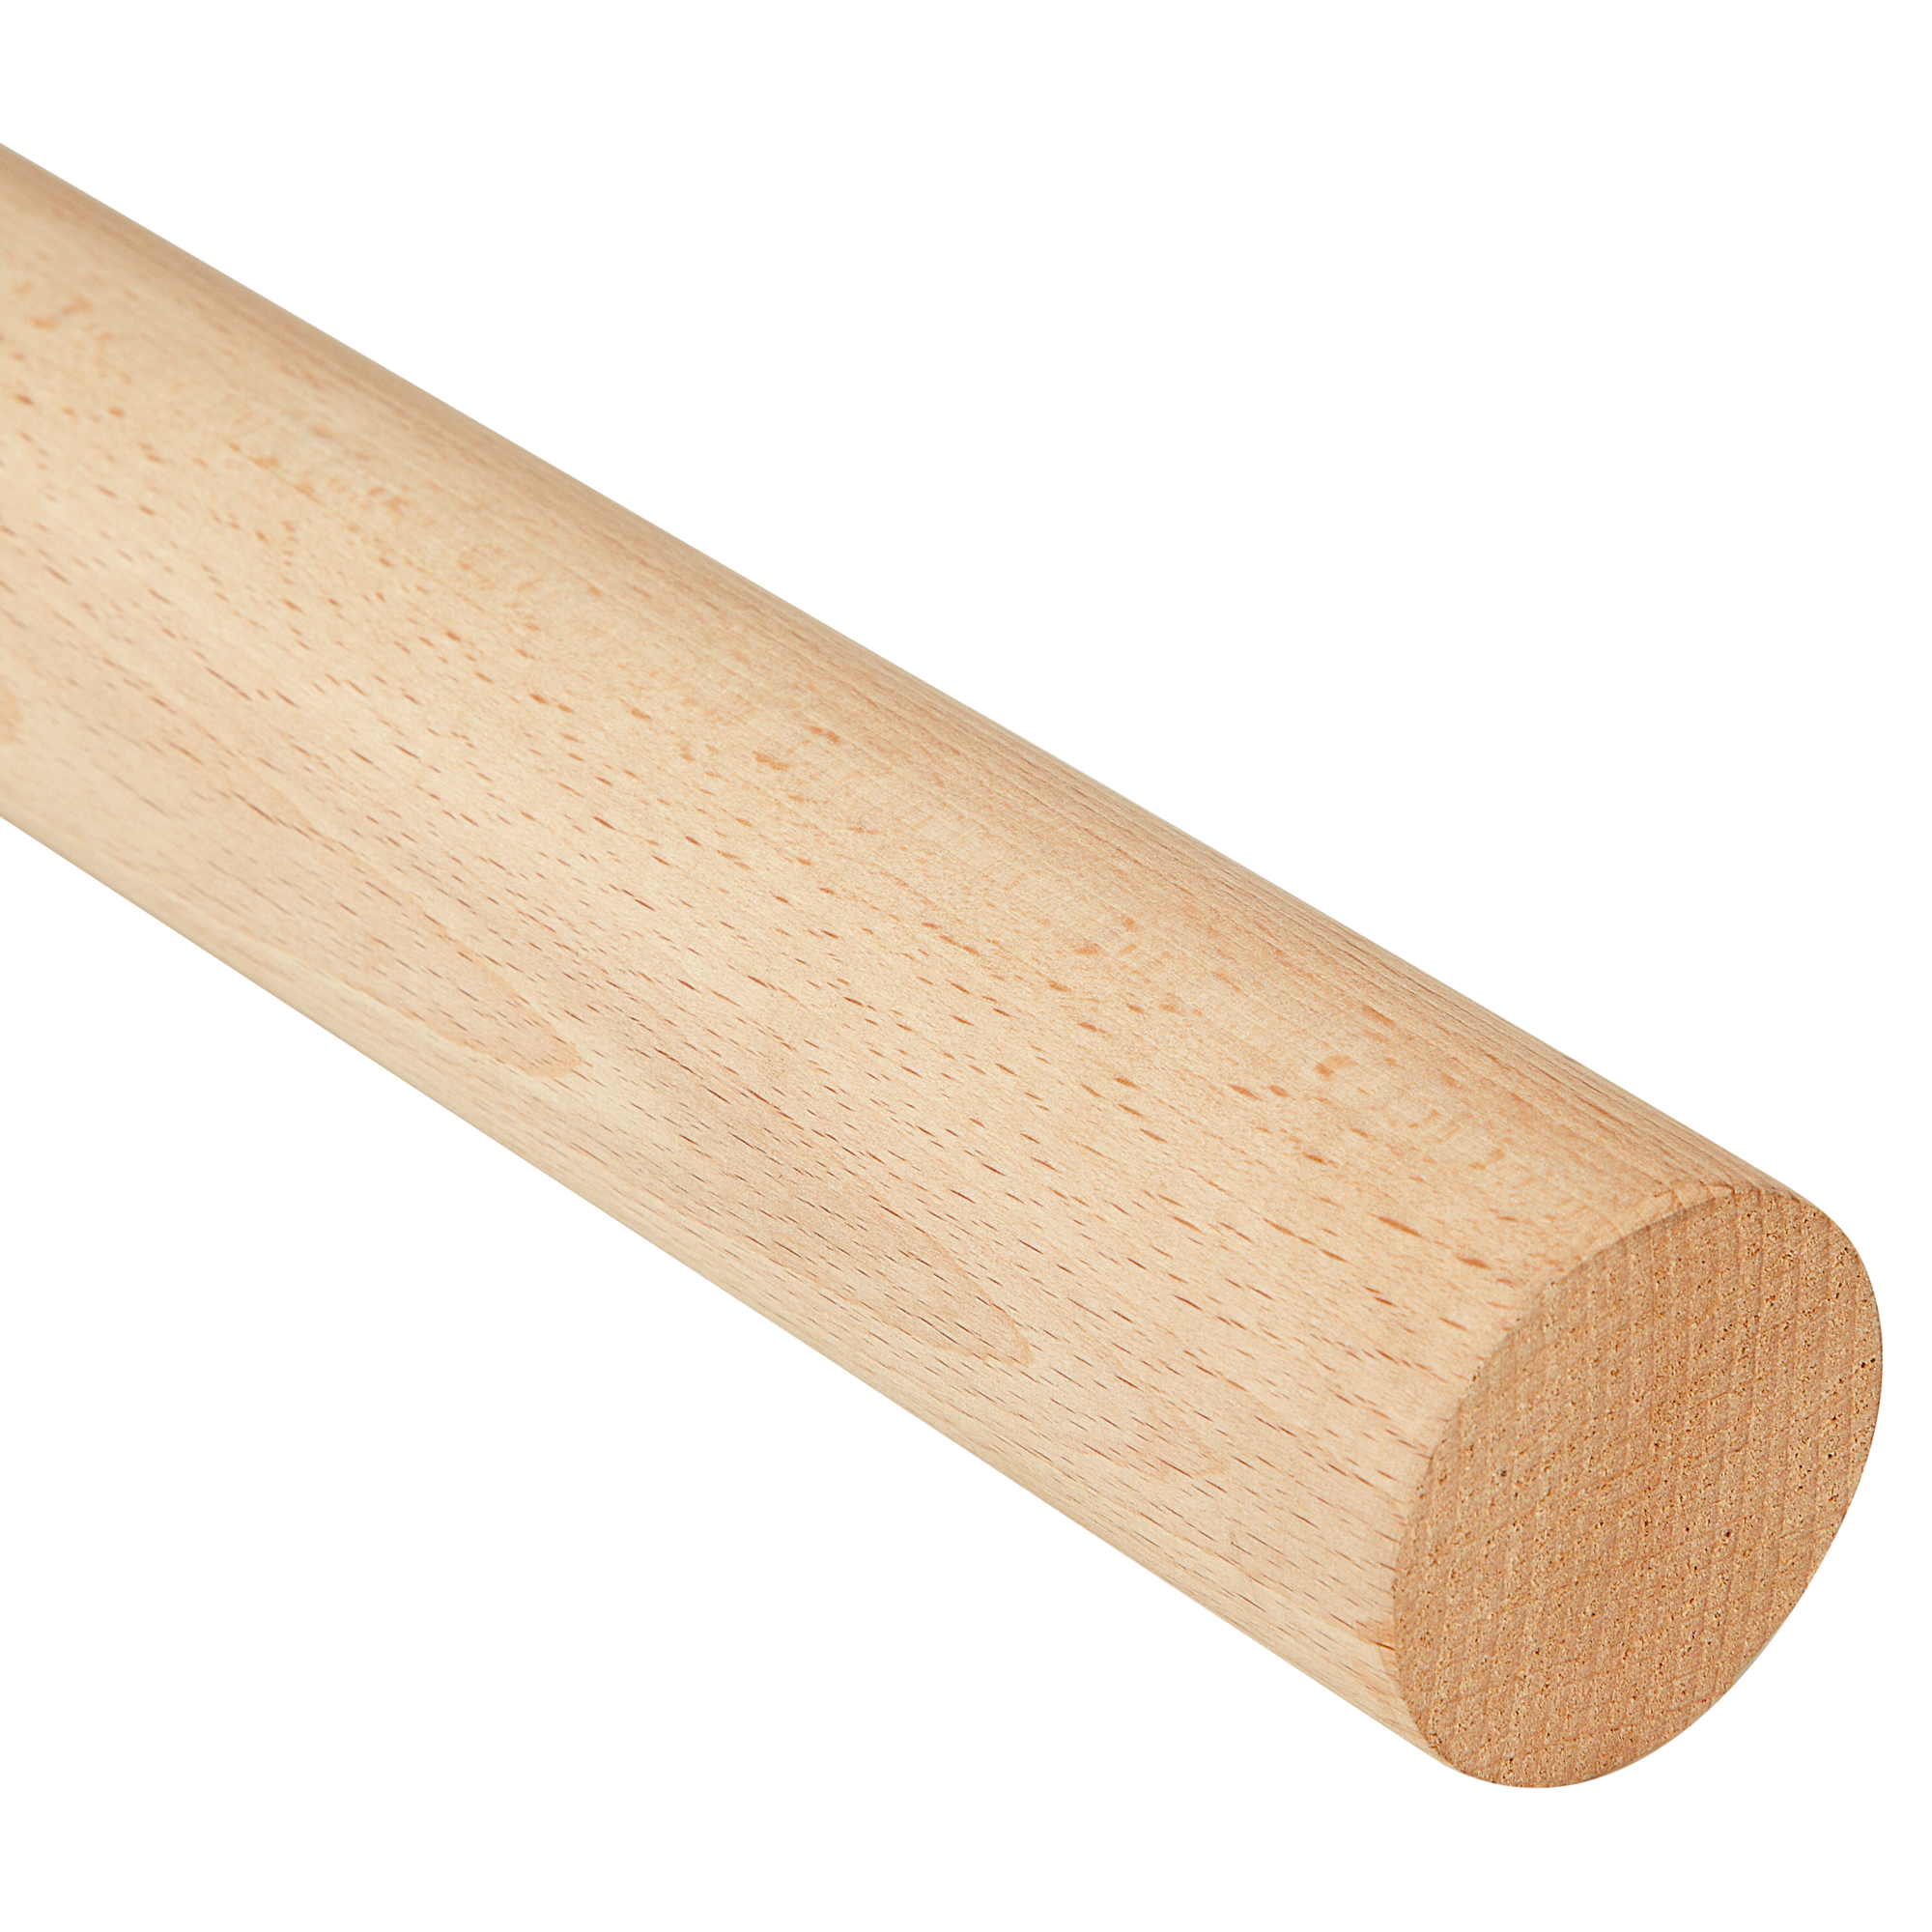 Rundstab Buche glatt 1 m lang Holzstange Holzstab Rundholz Durchmesser 3-60 mm 